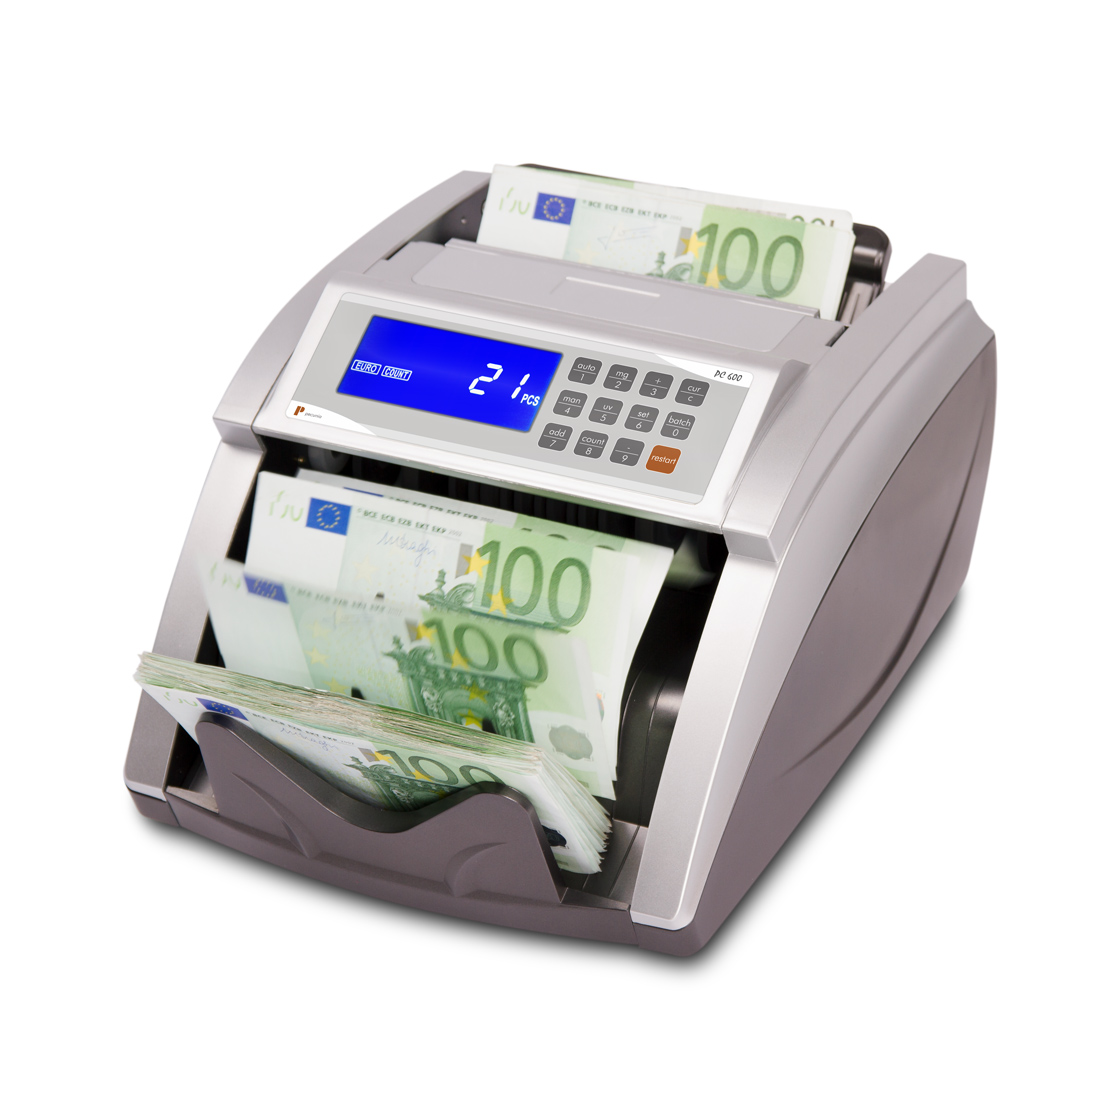 Banknote counters Pecunia PC 600 E2